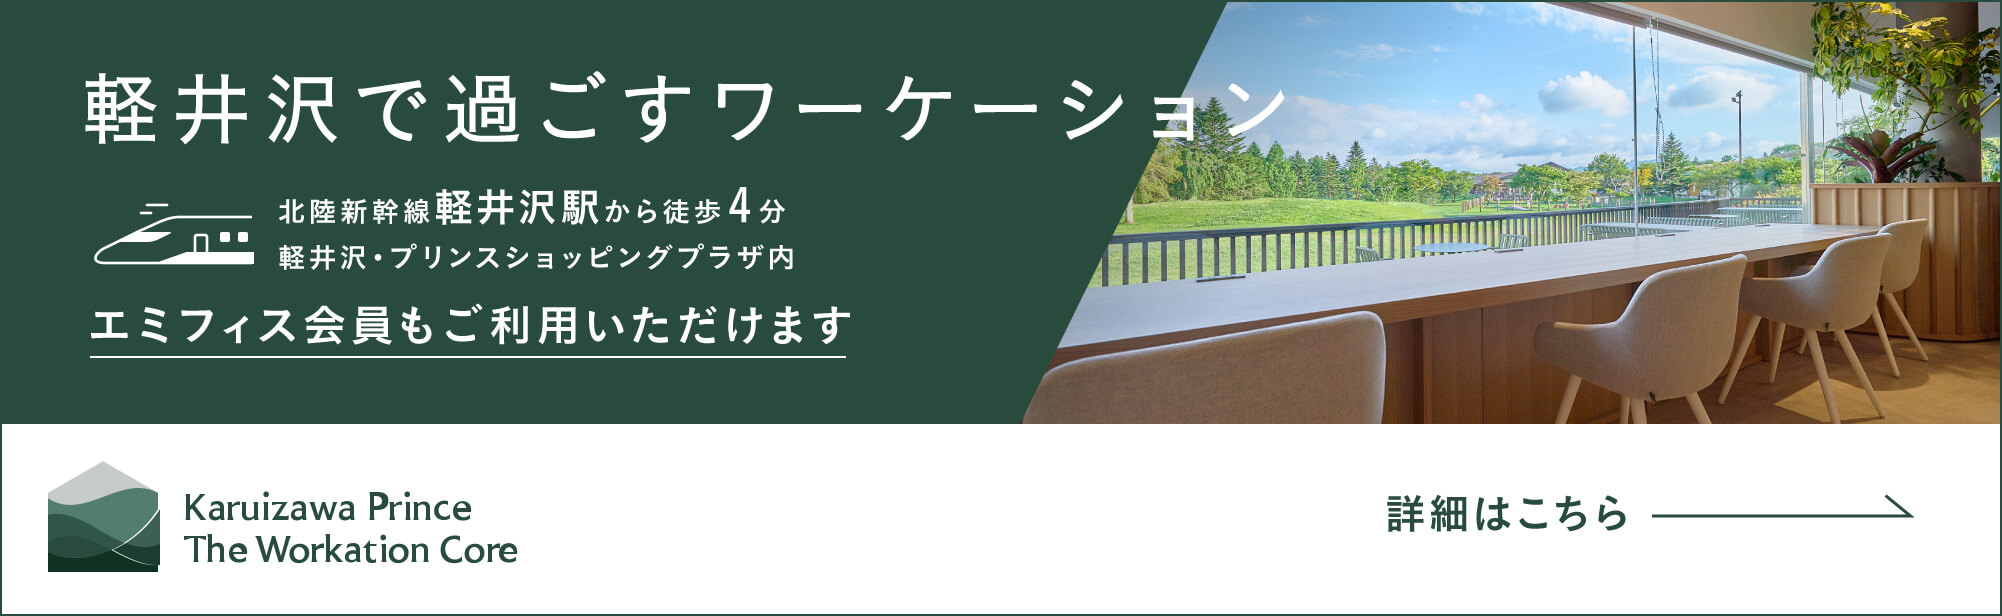 『軽井沢で過ごすワーケーション』エミフィス会員もご利用いただけます Karuizawa Prince The Workation Core 詳細はこちら